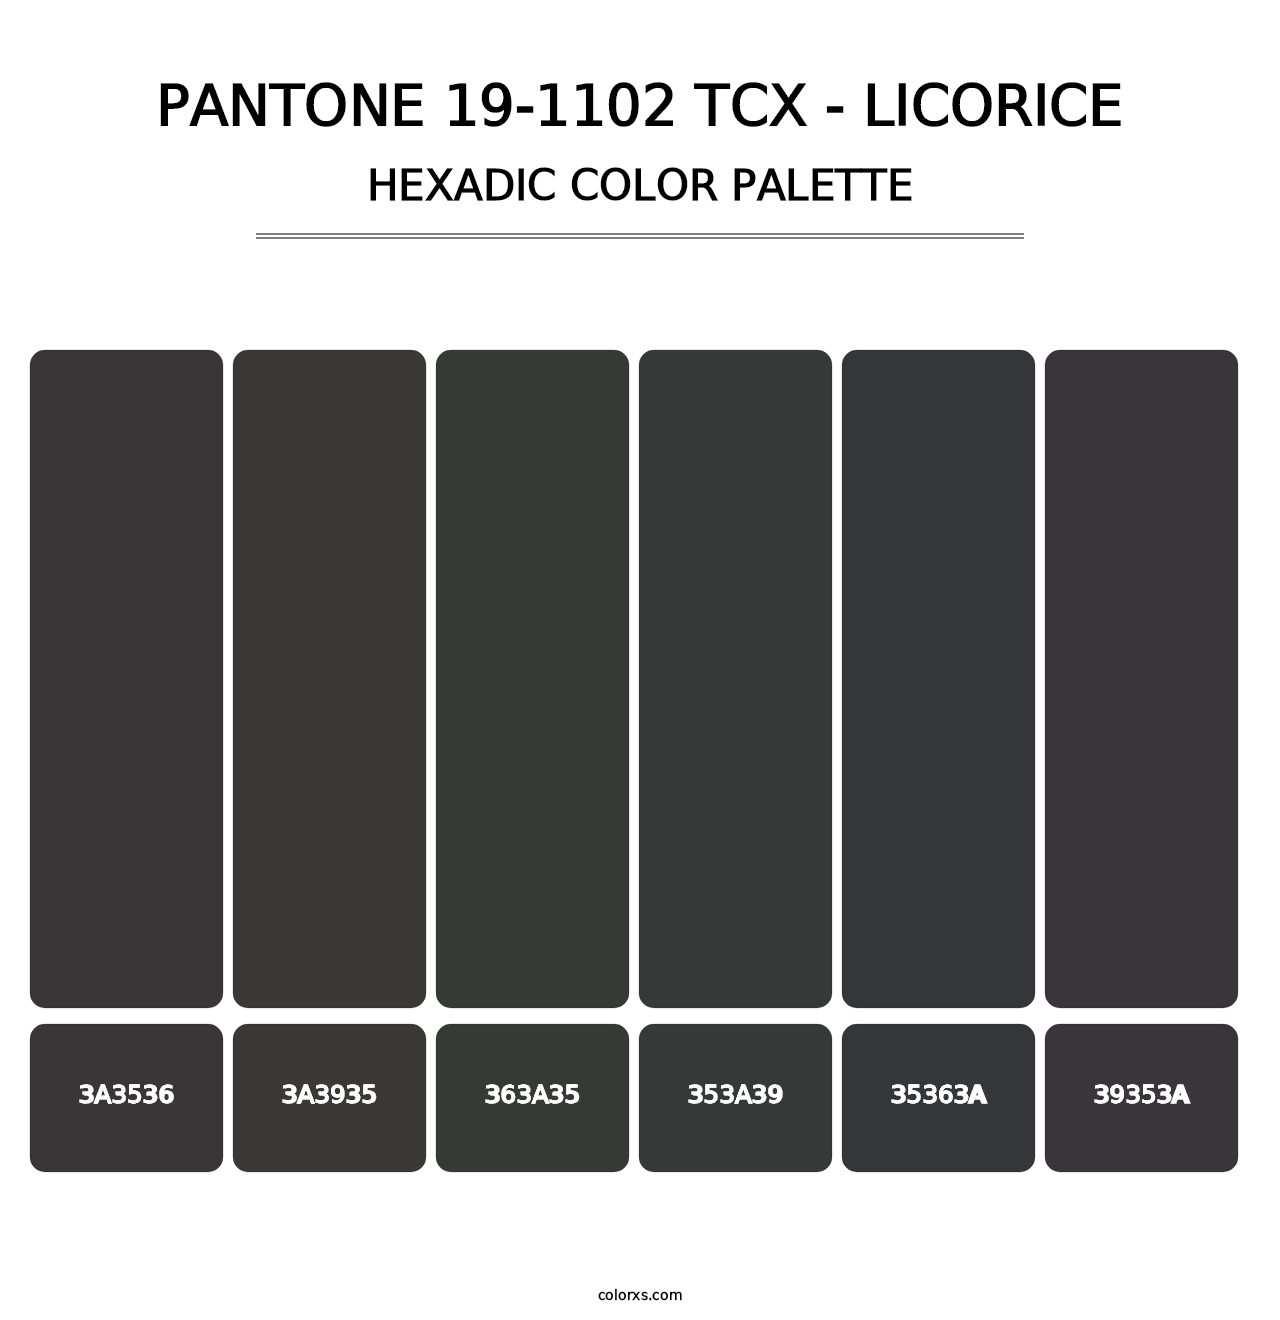 PANTONE 19-1102 TCX - Licorice - Hexadic Color Palette